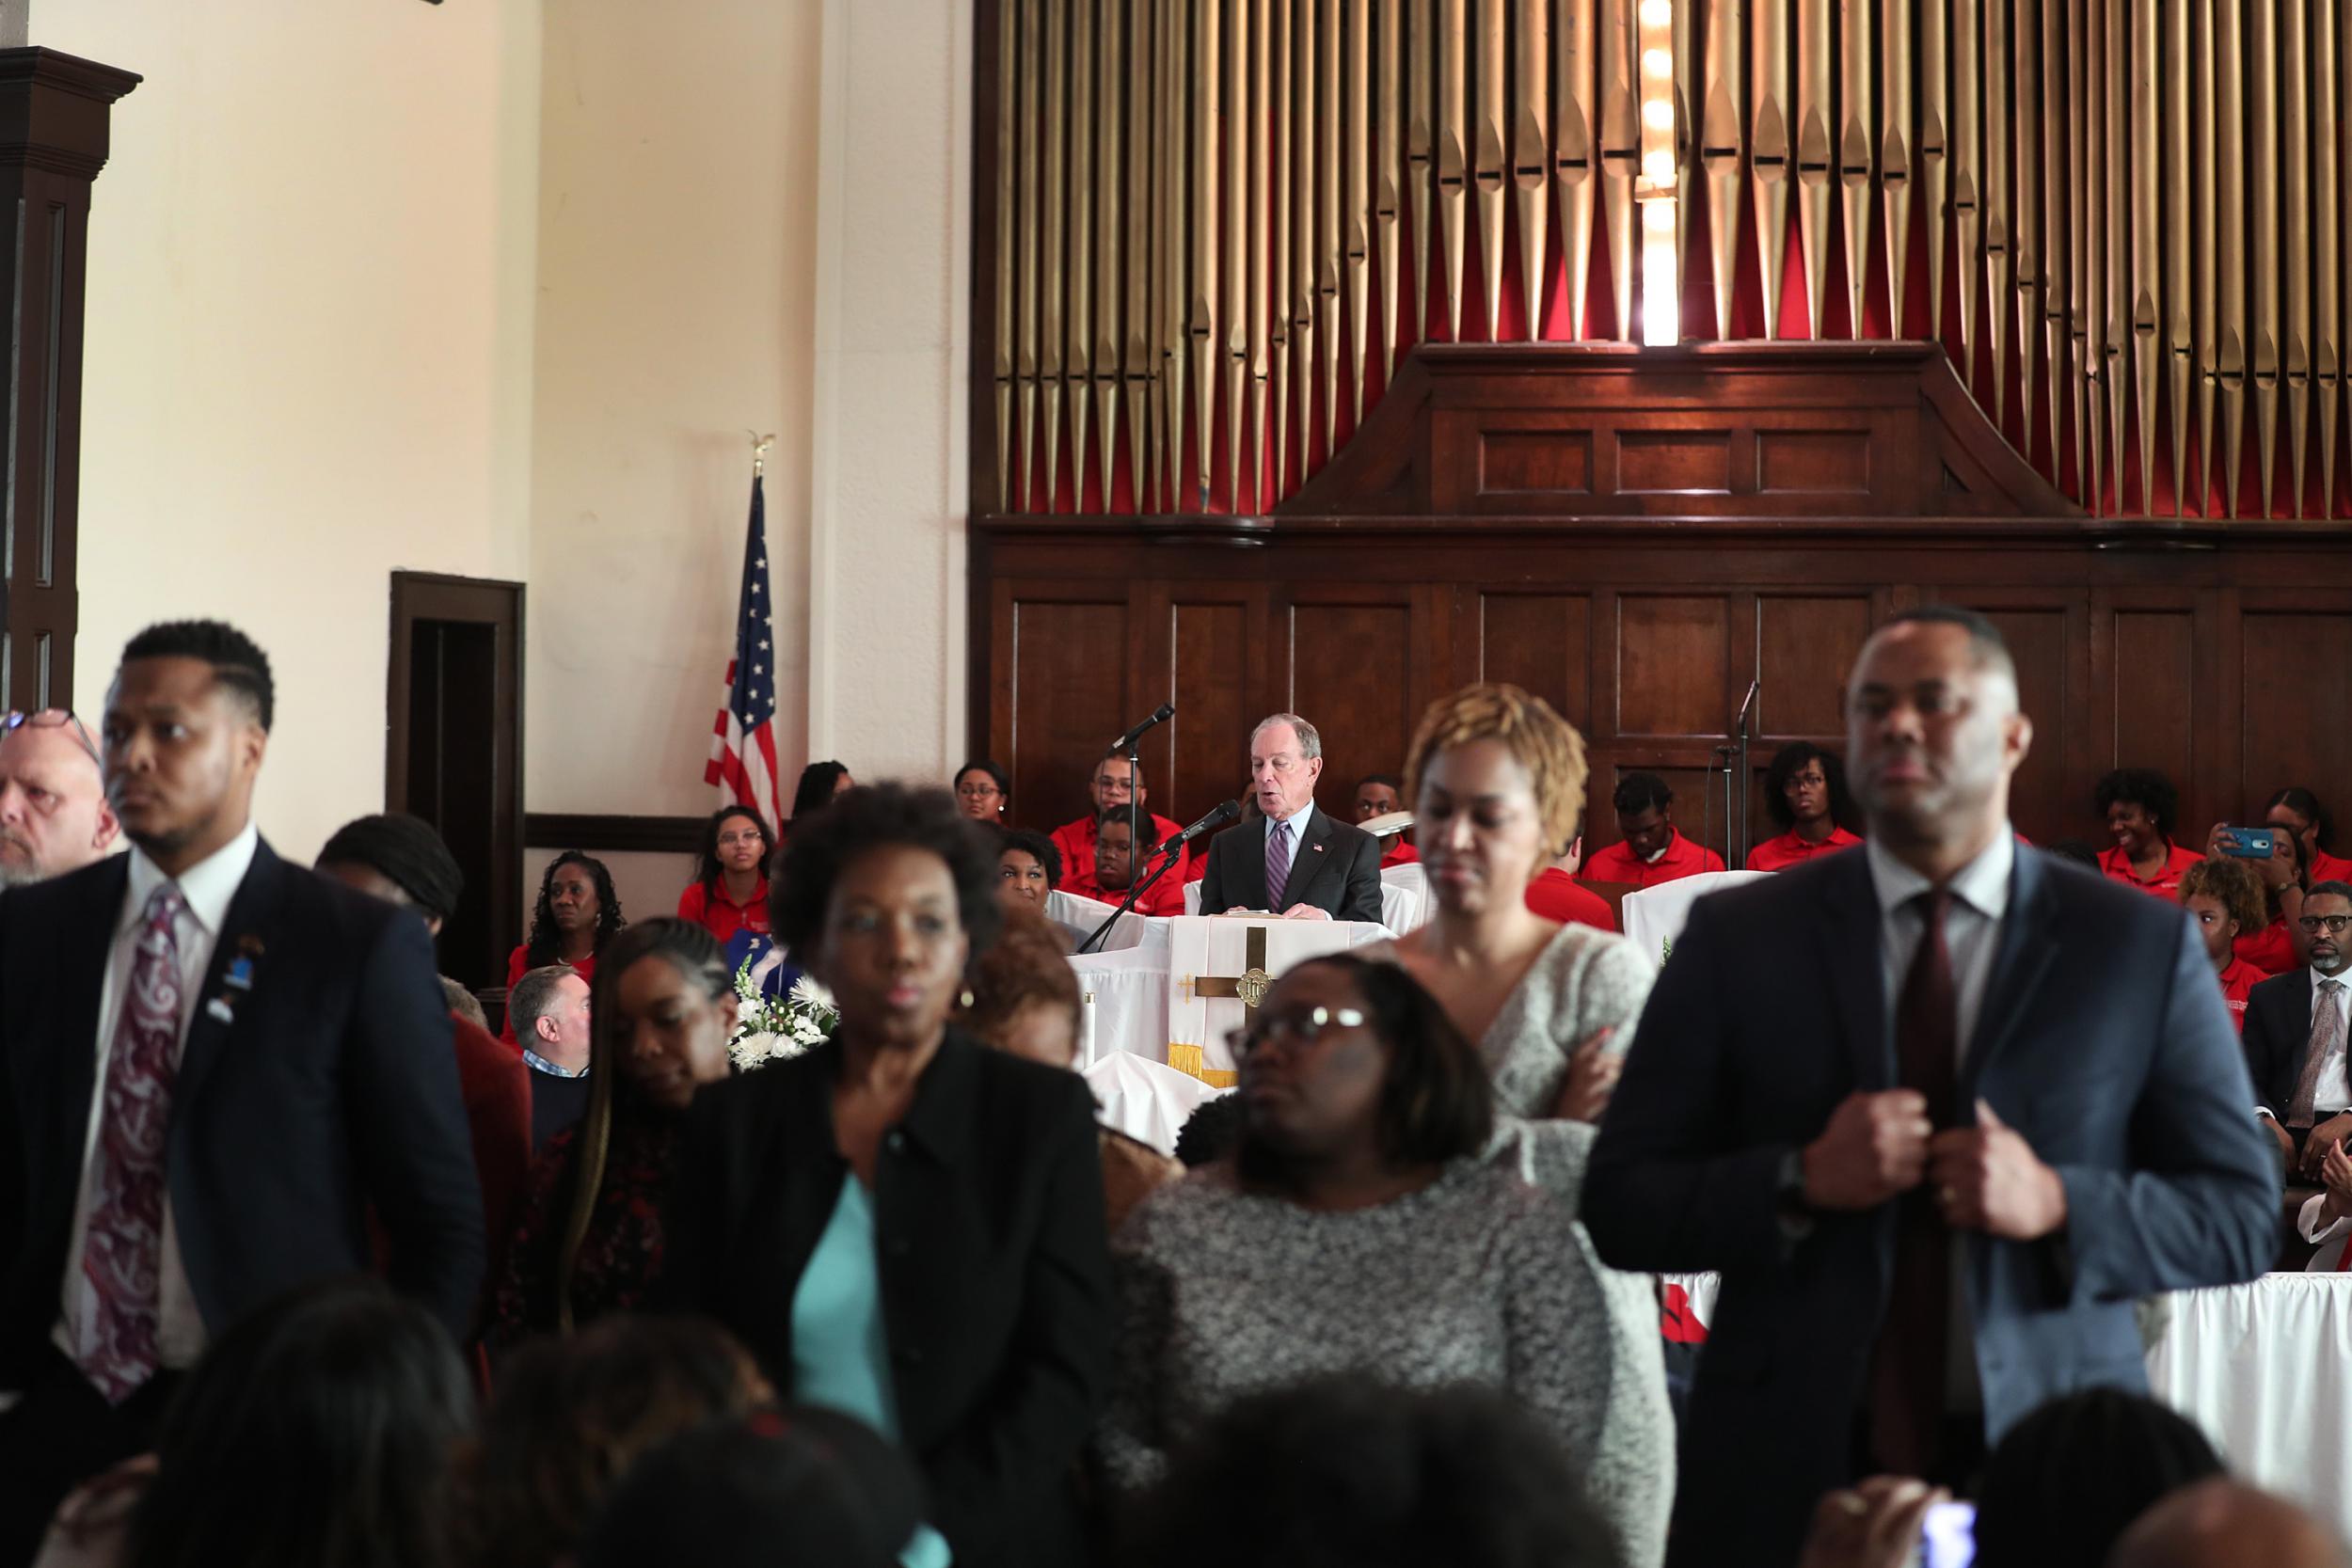 Churchgoers in Selma, Alabama turn their backs to presidential hopeful Michael Bloomberg.